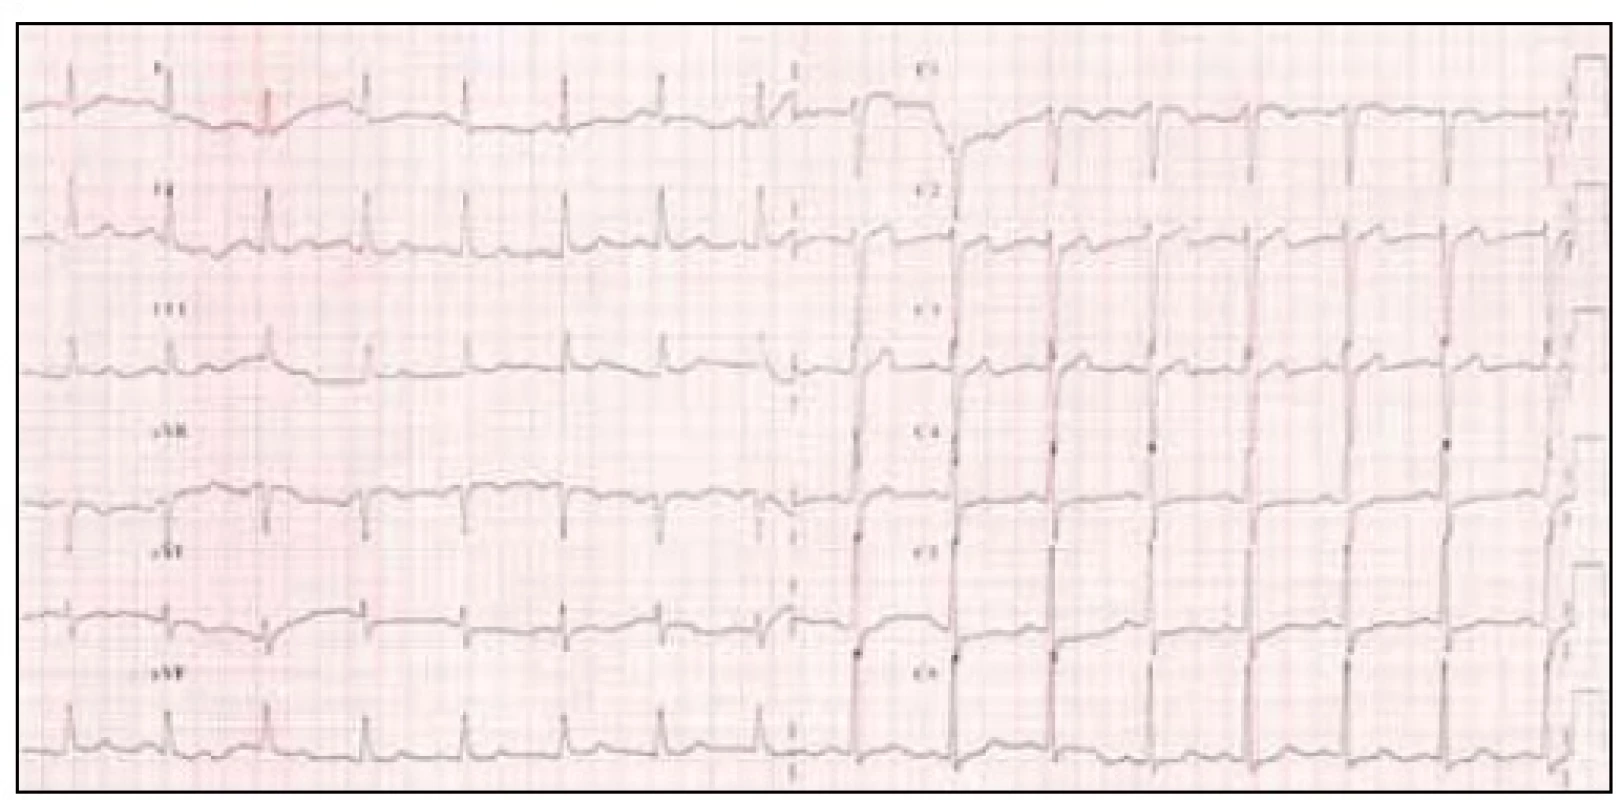 12svodové EKG před hyperventilačním testem.